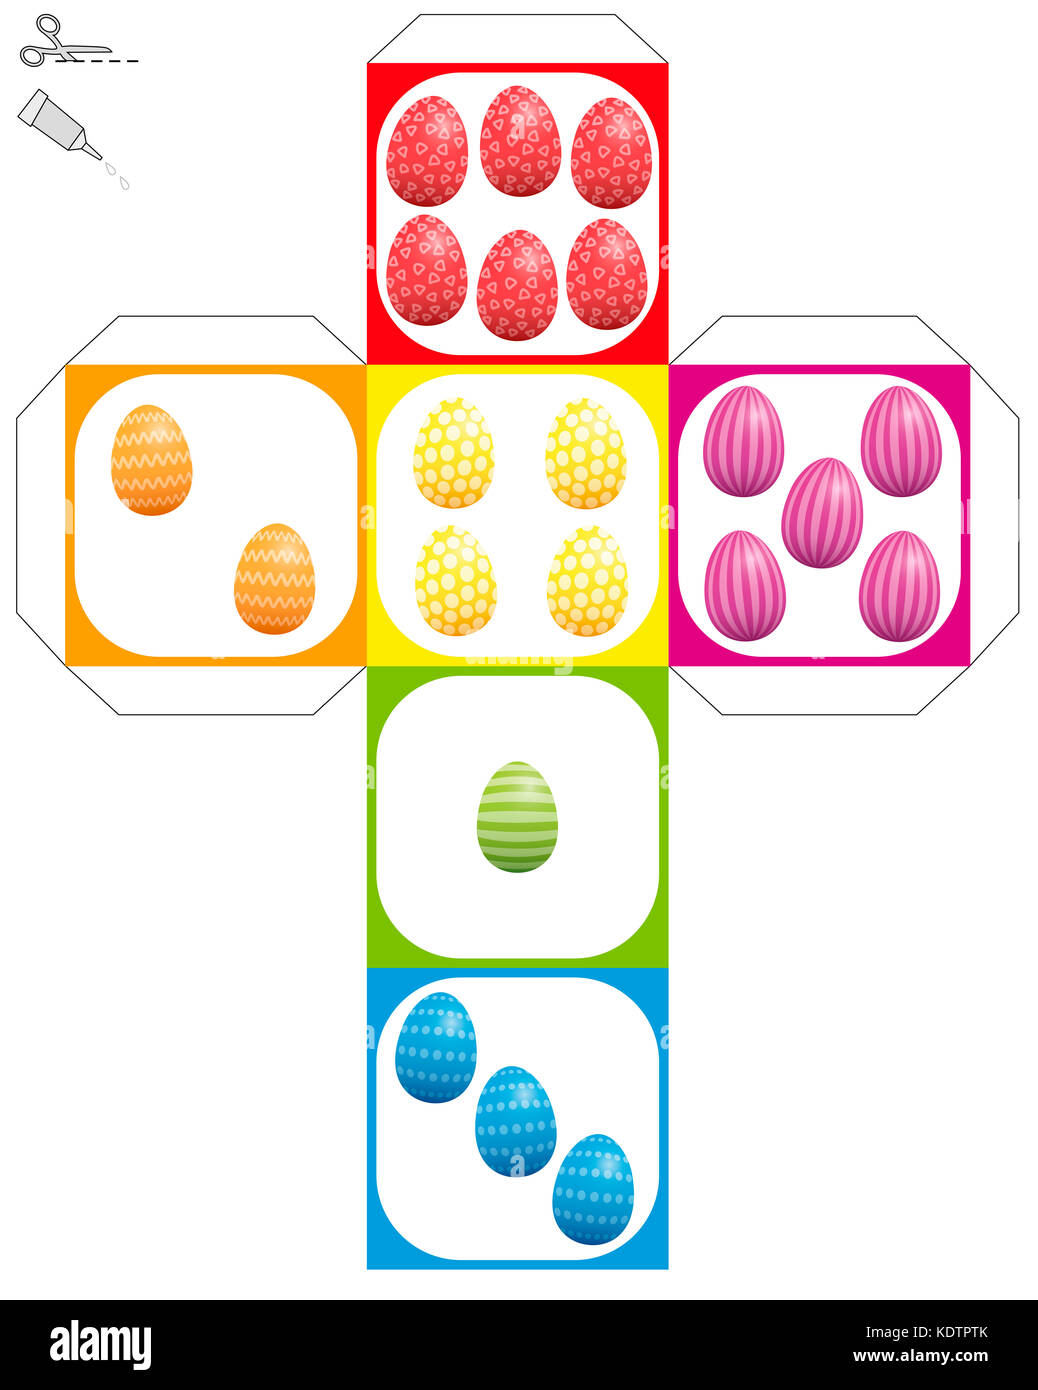 Easter egg Würfel Vorlage - Es tun sich Modell eines Würfels mit farbigen und Ostereier statt Würfel Augen gemustert. Stockfoto